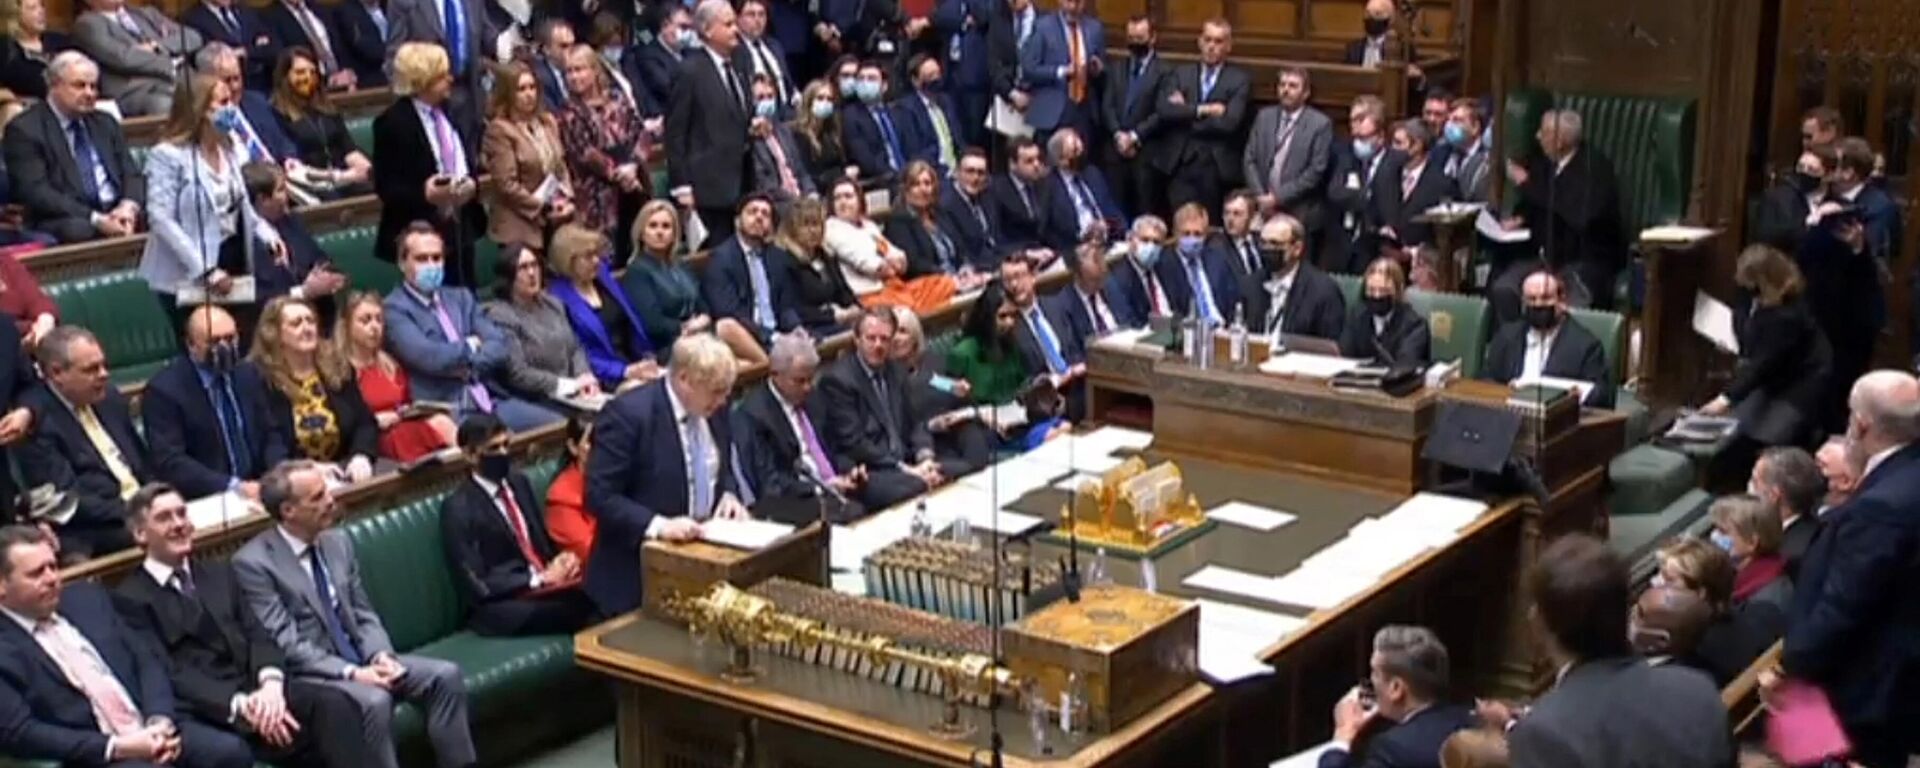 Uma captura de vídeo de imagens transmitidas pela Unidade de Gravação Parlamentar do Parlamento do Reino Unido (PRU) mostra o primeiro-ministro britânico, Boris Johnson, fazendo uma declaração aos parlamentares, na Câmara dos Comuns em Londres em 31 de janeiro de 2022 - Sputnik Brasil, 1920, 10.02.2022